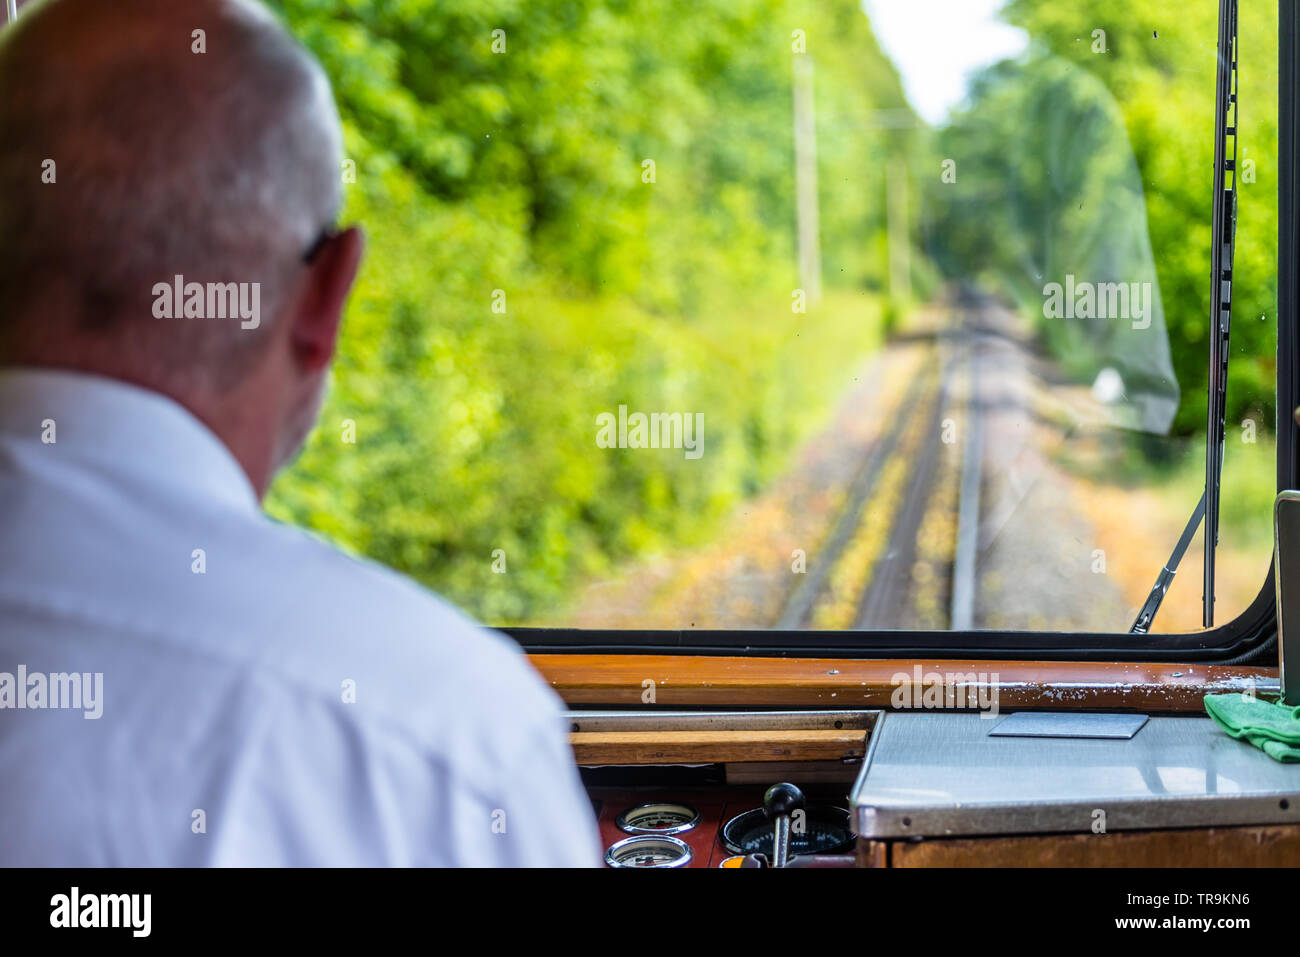 Une vue de la fenêtre d'un train de chemin de fer, un moteur visible pilote exécuté un train, planche de bord, des pistes, des arbres et un ciel bleu avec blanc clou Banque D'Images